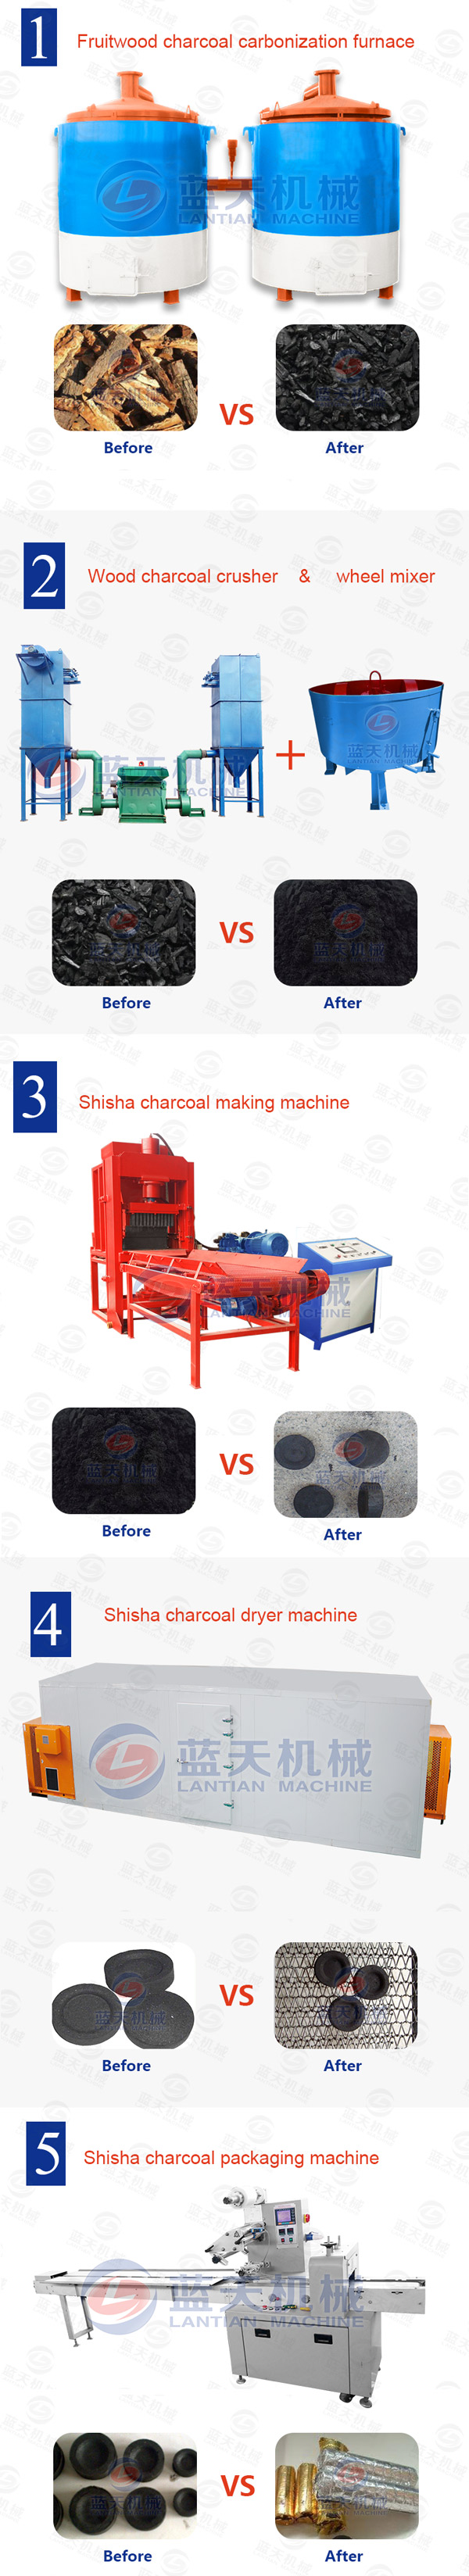 shisha coal making machine